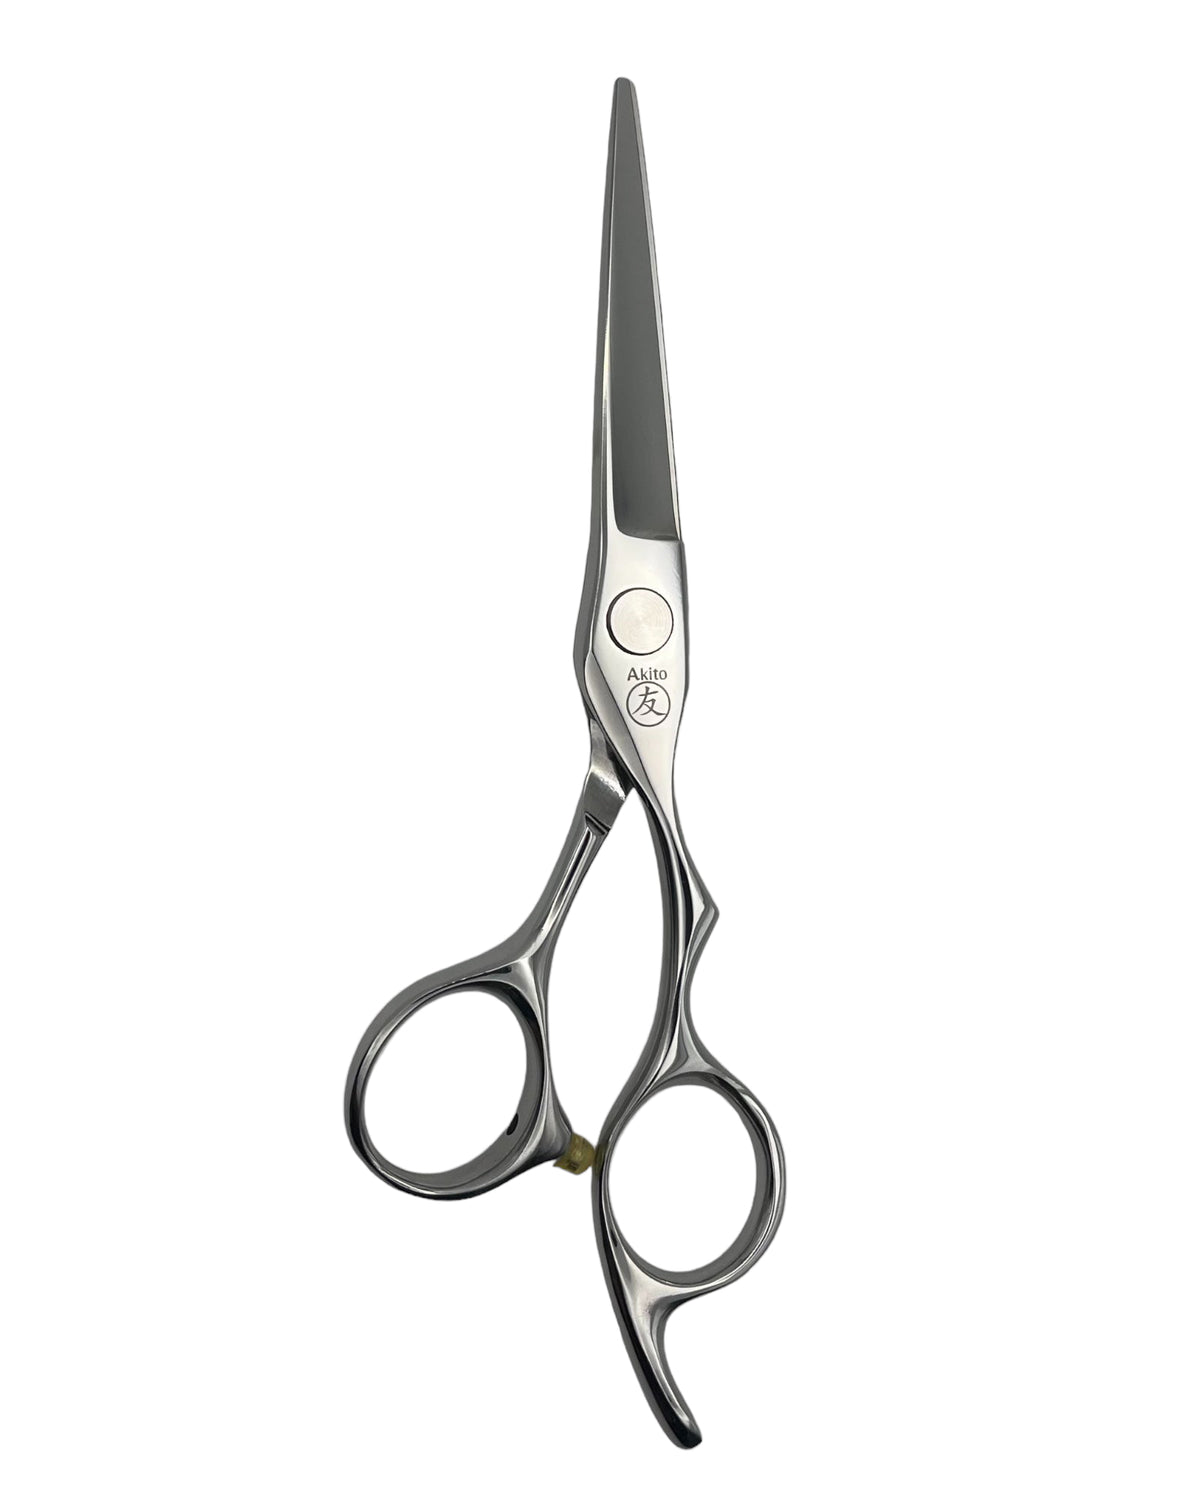 Misaki 5.5 hairdressing scissors